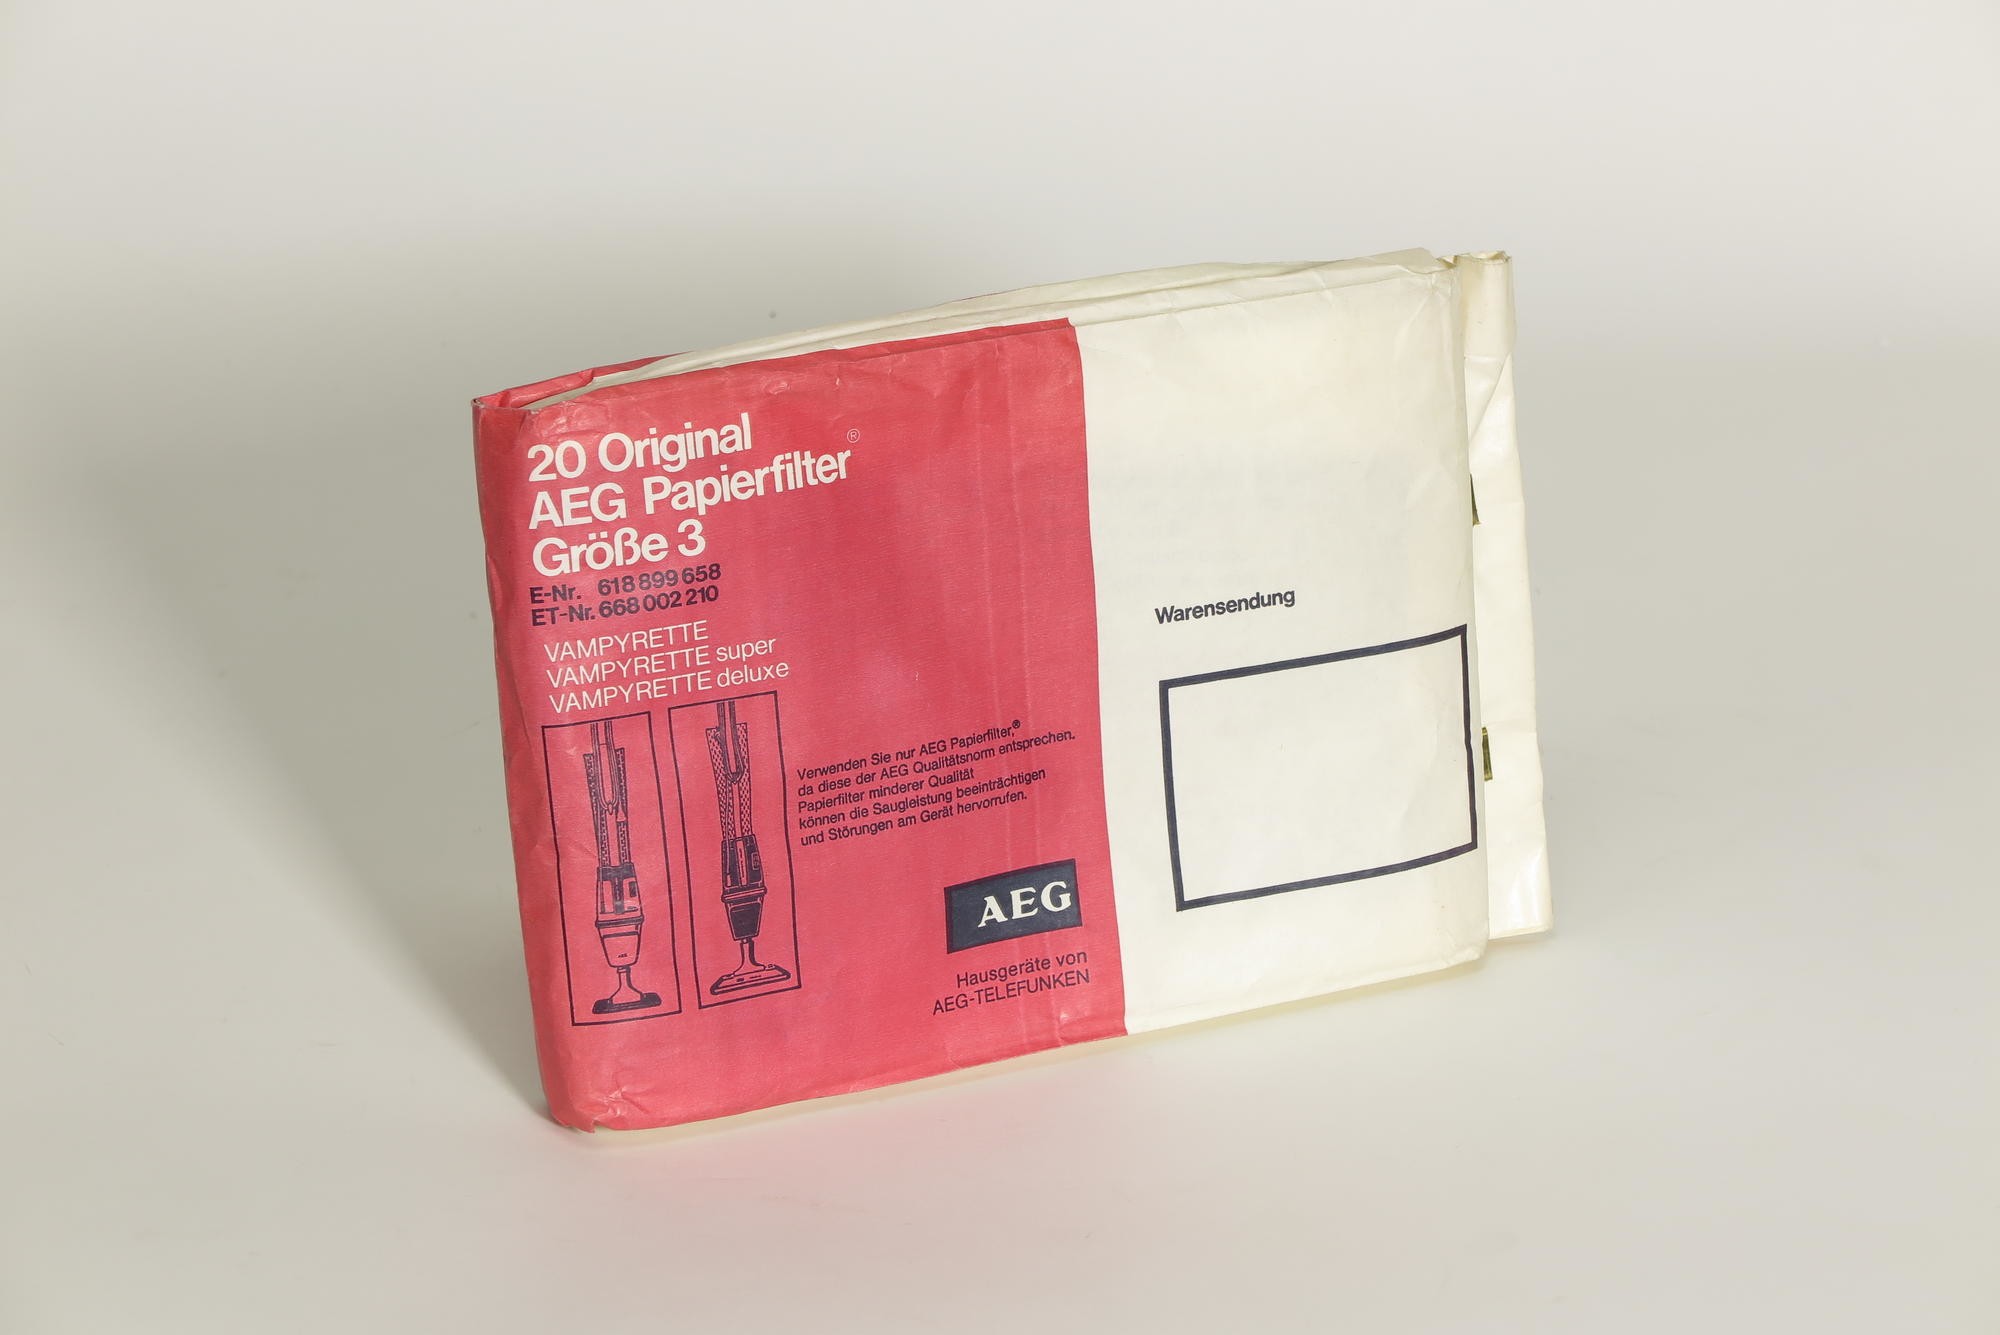 Paket mit Papierfiltern AEG Größe 3 Vampyrette, Staubsaugerzubehör (Stiftung Deutsches Technikmuseum Berlin CC0)